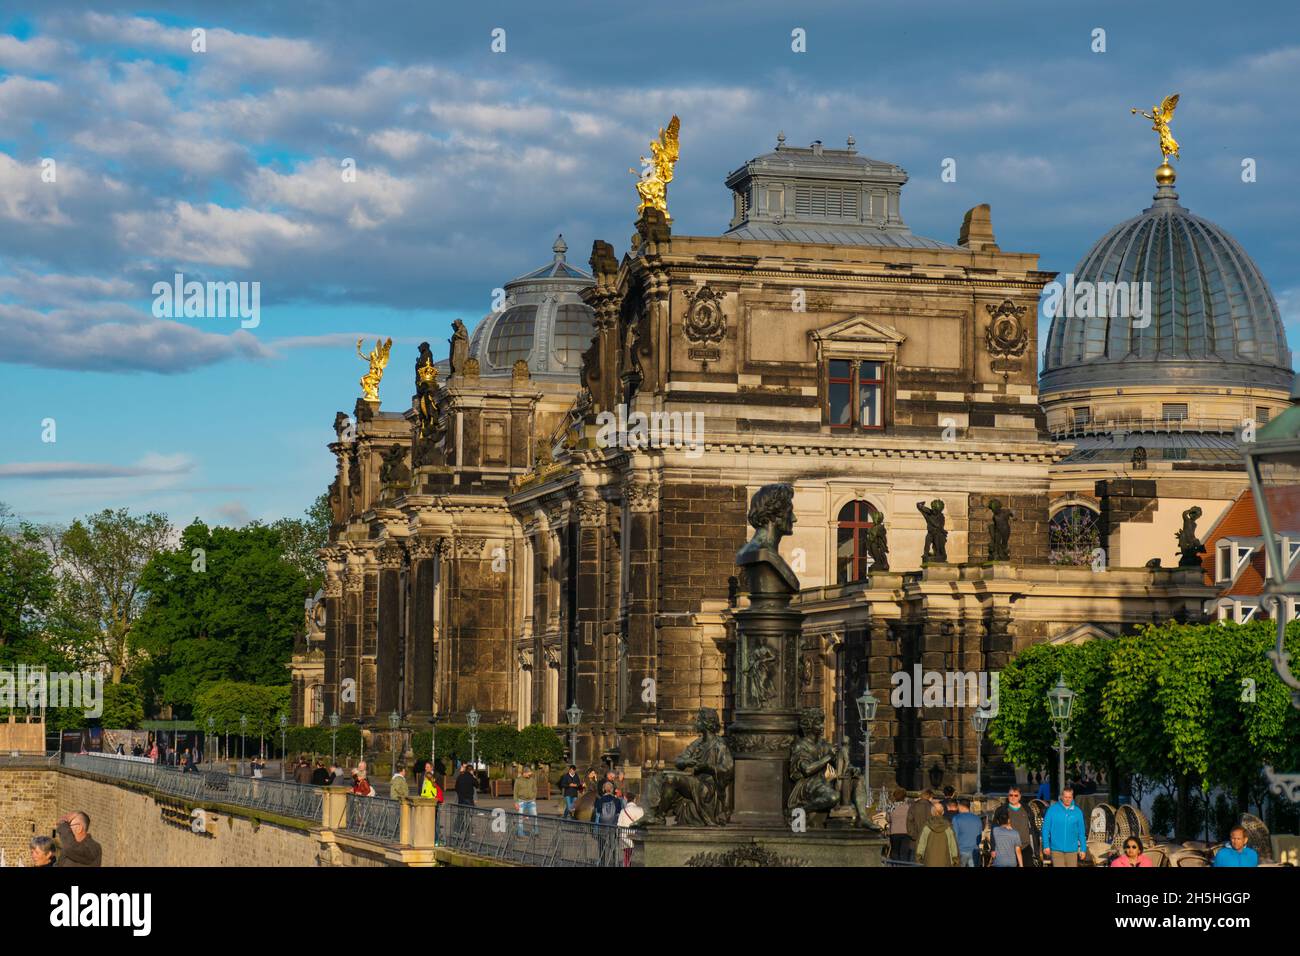 20 mai 2019 Dresde, Allemagne - Palais de Dresde, vue depuis la terrasse Banque D'Images